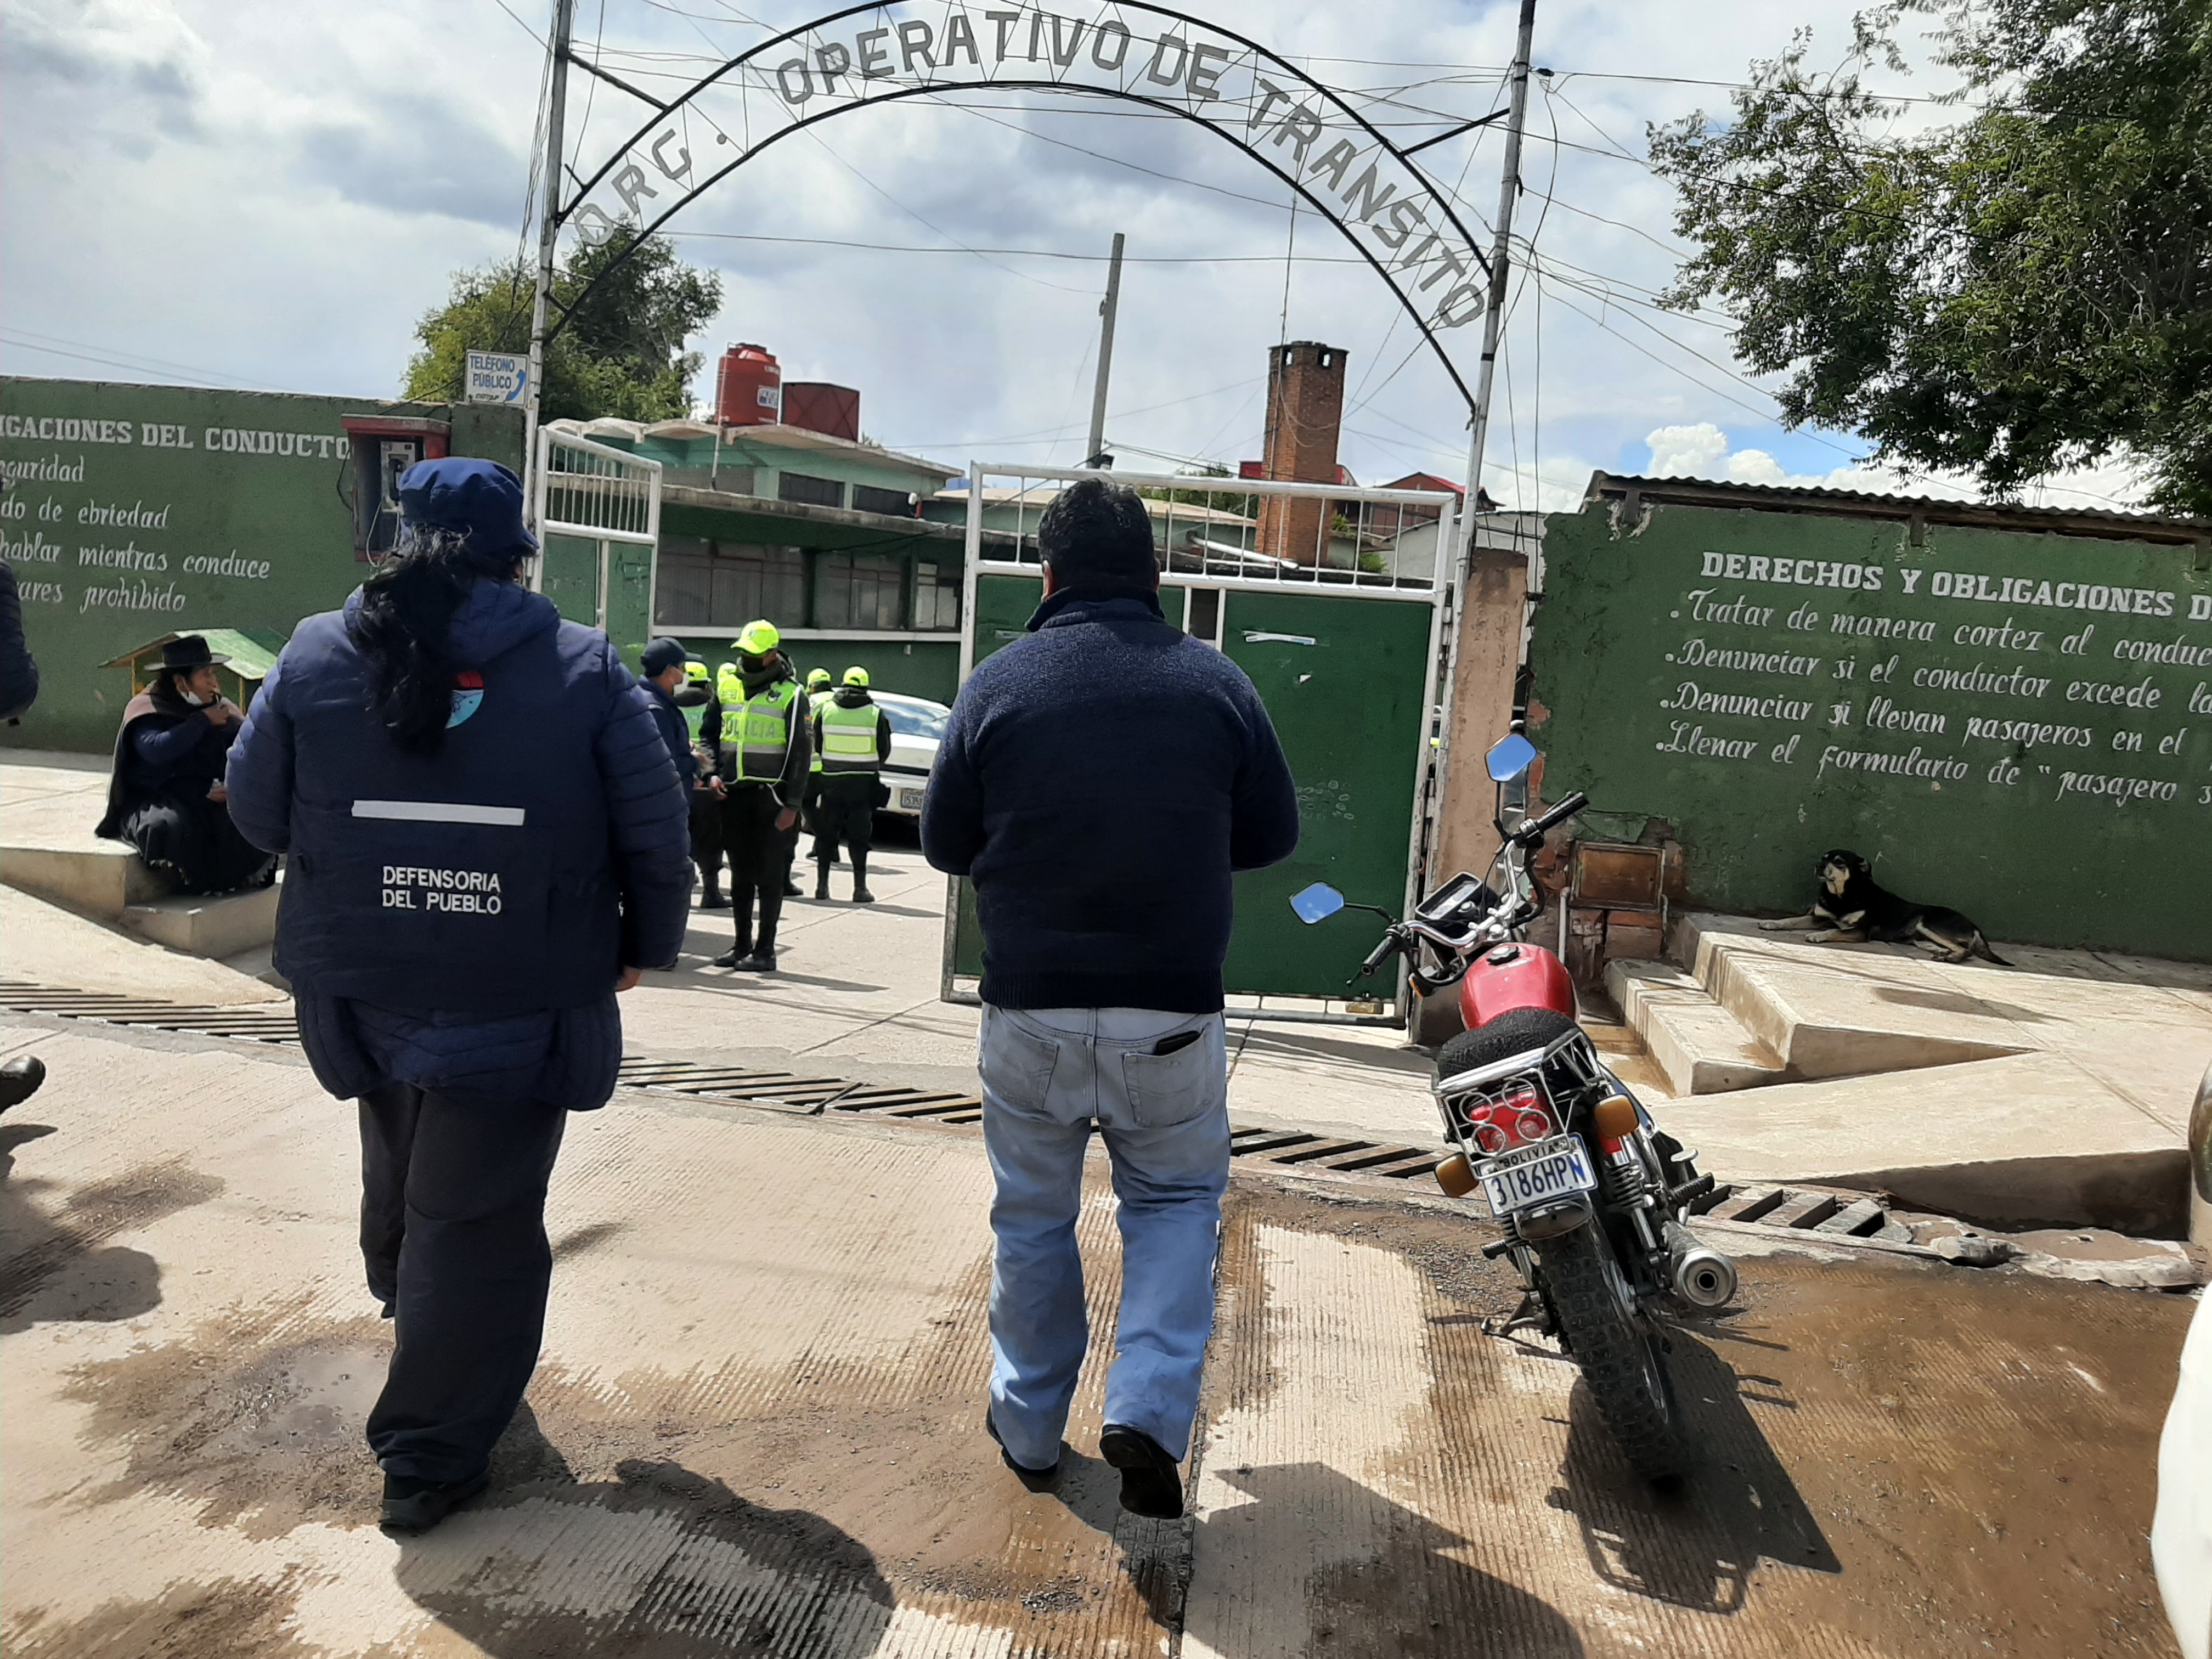 DEFENSORÍA DEL PUEBLO CAPACITARÁ A POLICÍAS DE TRÁNSITO DE POTOSÍ PARA CESAR Y EVITAR MALTRATOS